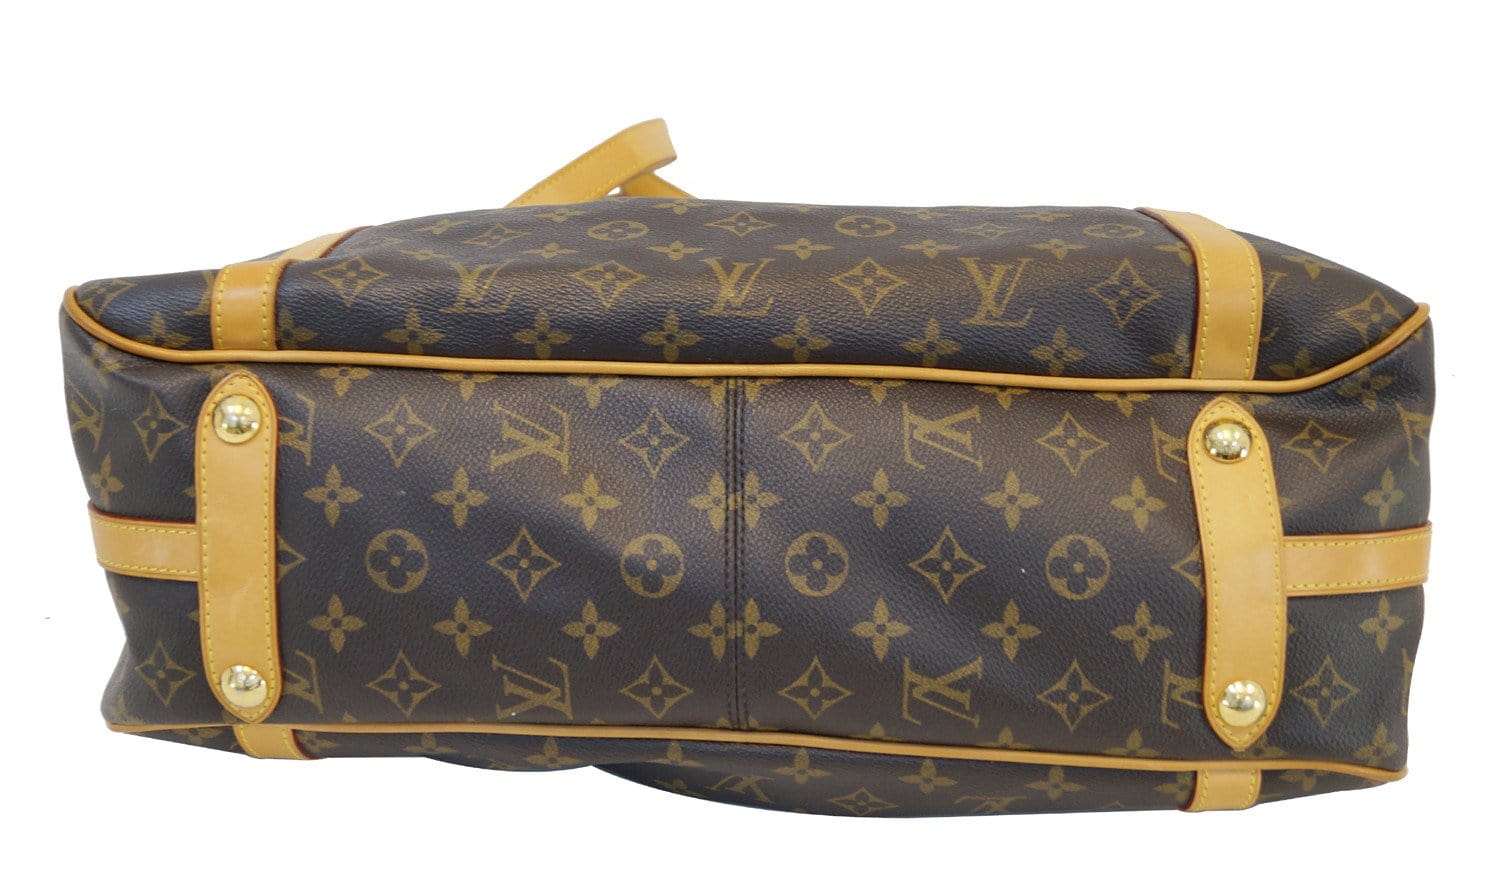 Louis Vuitton Stresa Handbag 369405